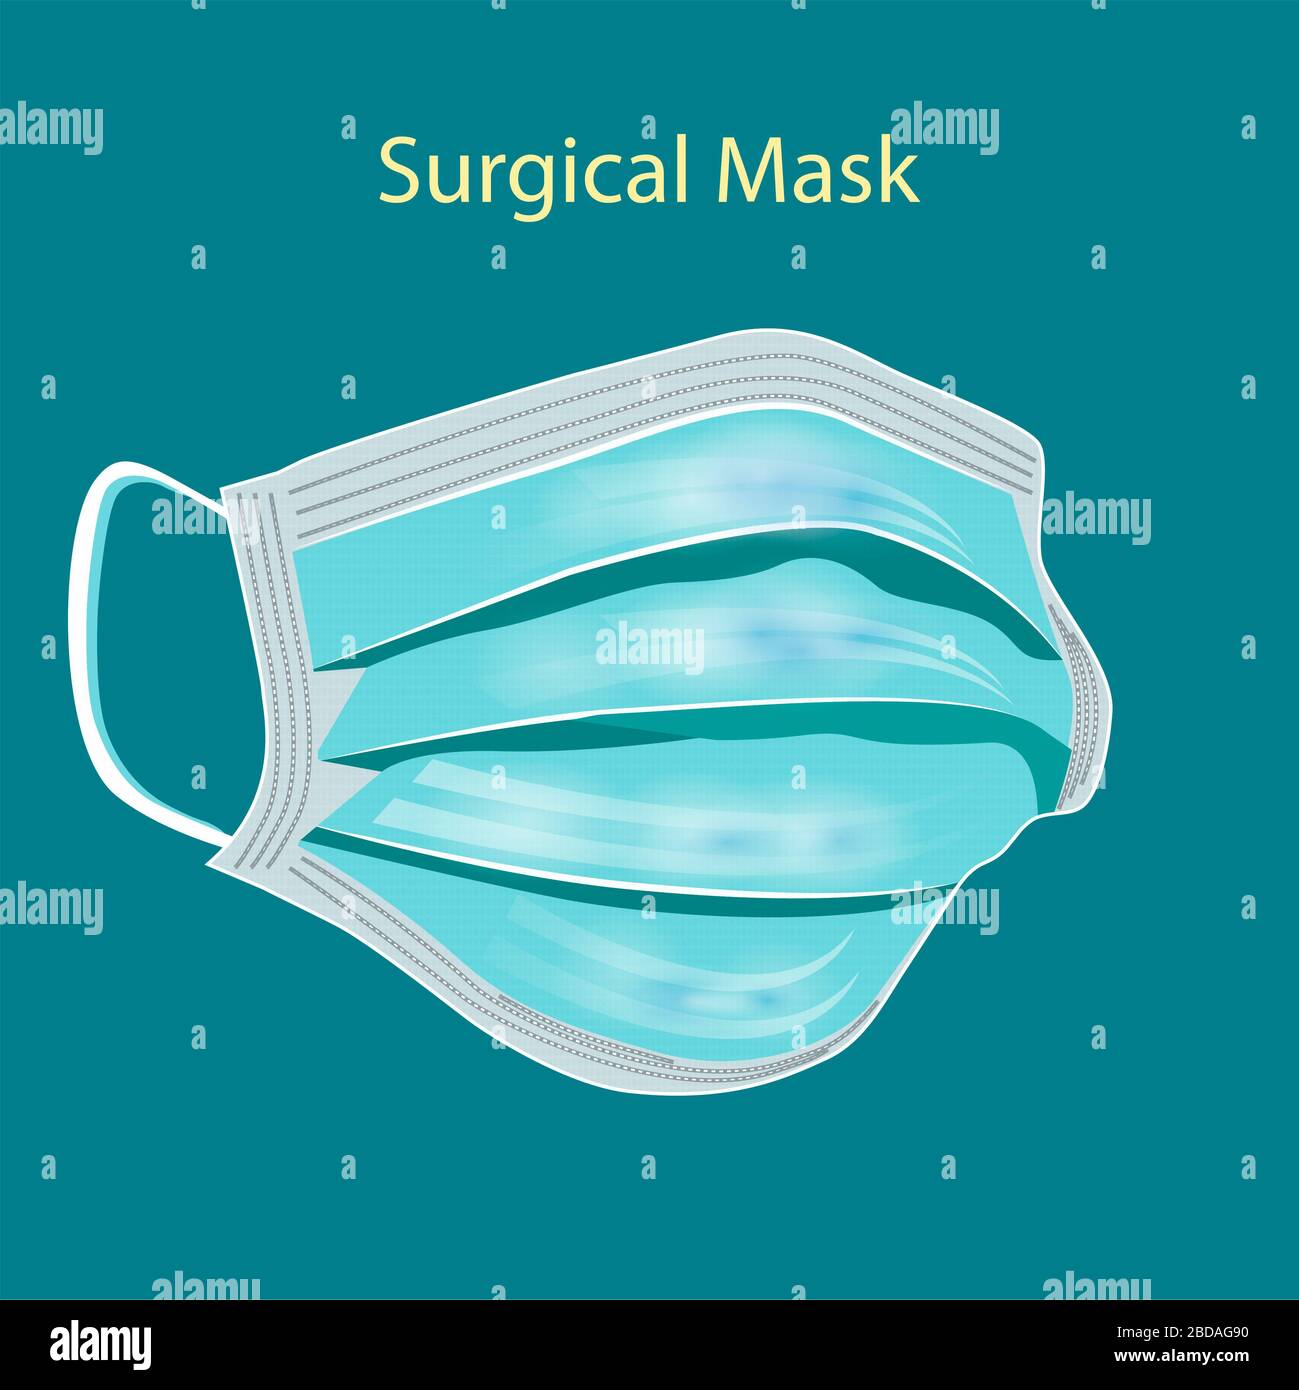 Details 3D medizinische chirurgische Maske isoliert auf türkisfarbenem Hintergrund. Vektorgrafiken. COVID19-Schutz. Realistische Maske zum Schutz der Menschen vor Viru Stockfoto